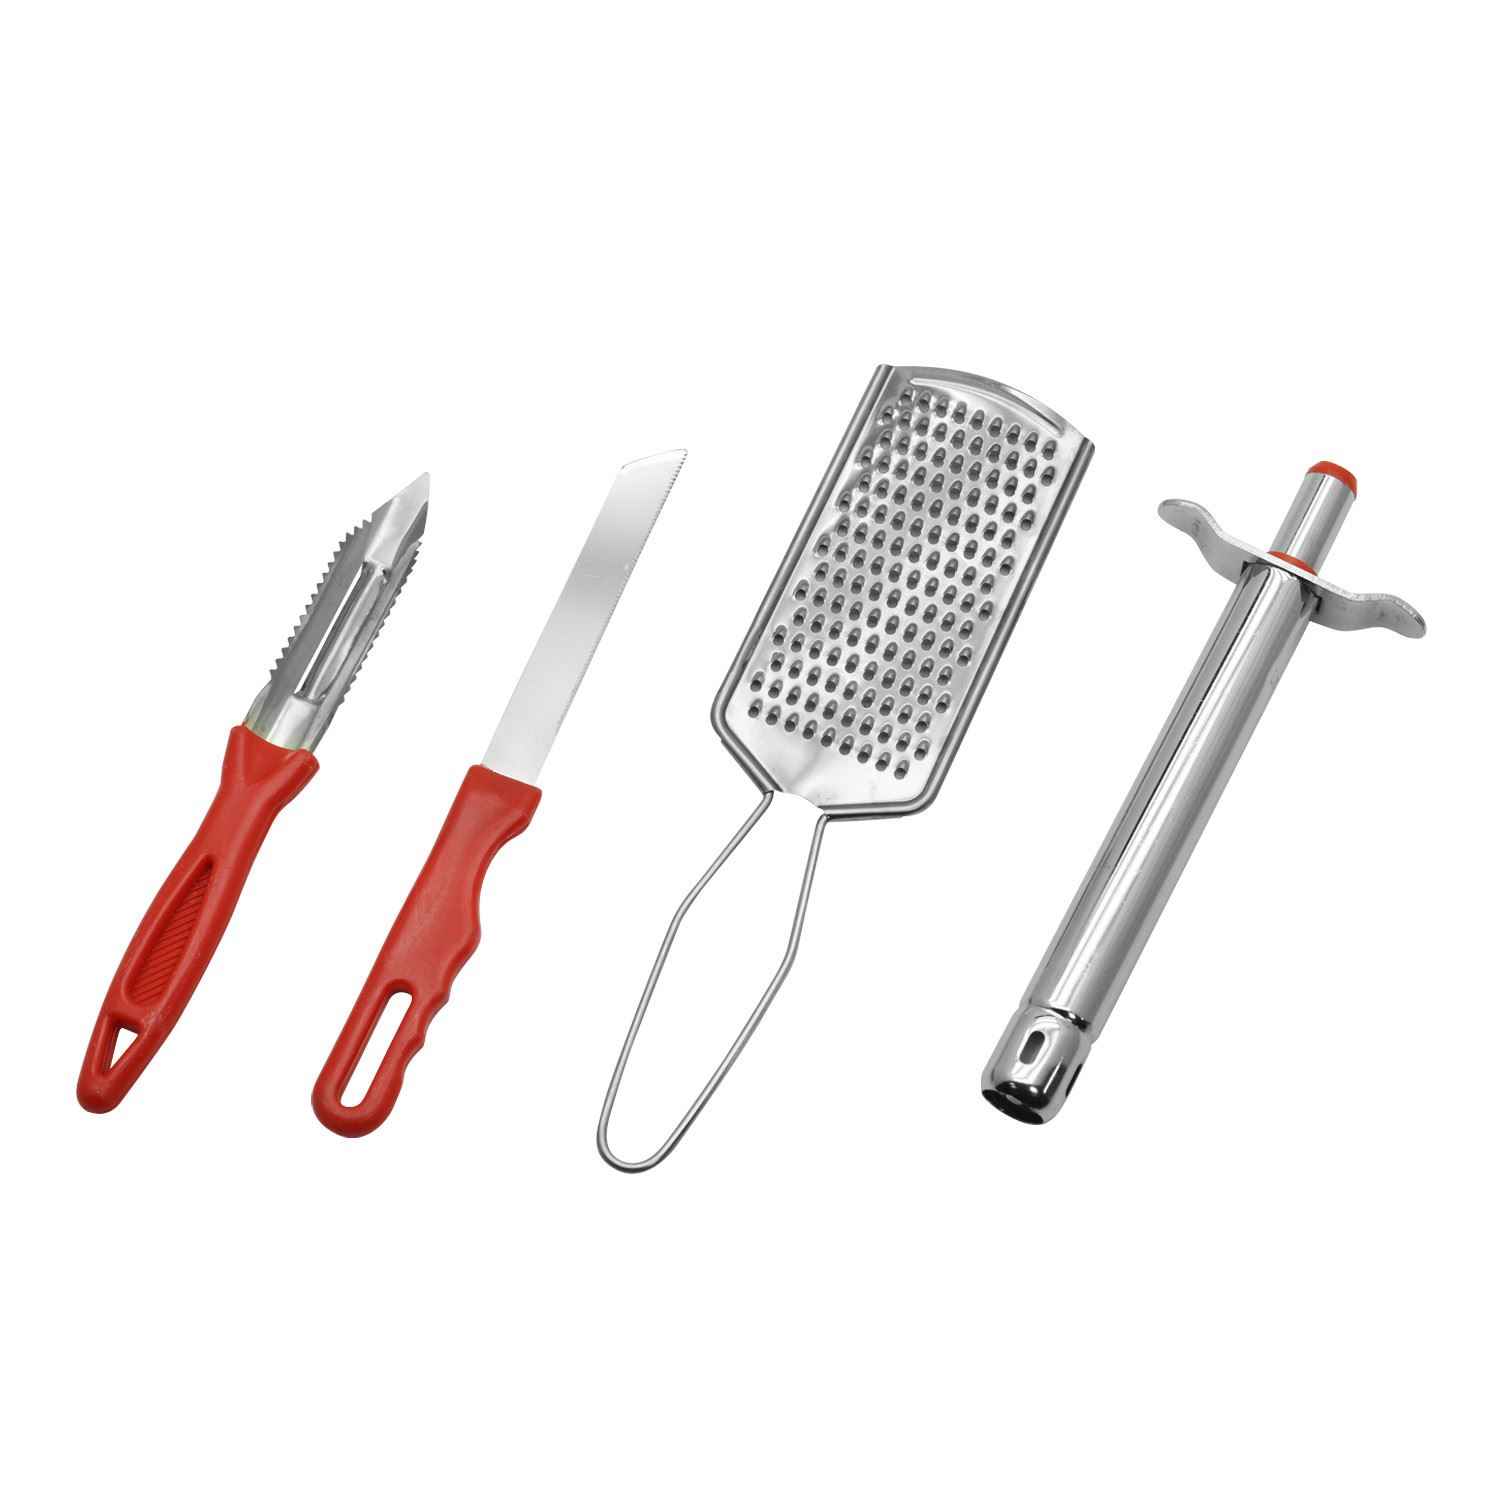 Rk Kitchen Gadgets, 4Pc Set, Rk0092 